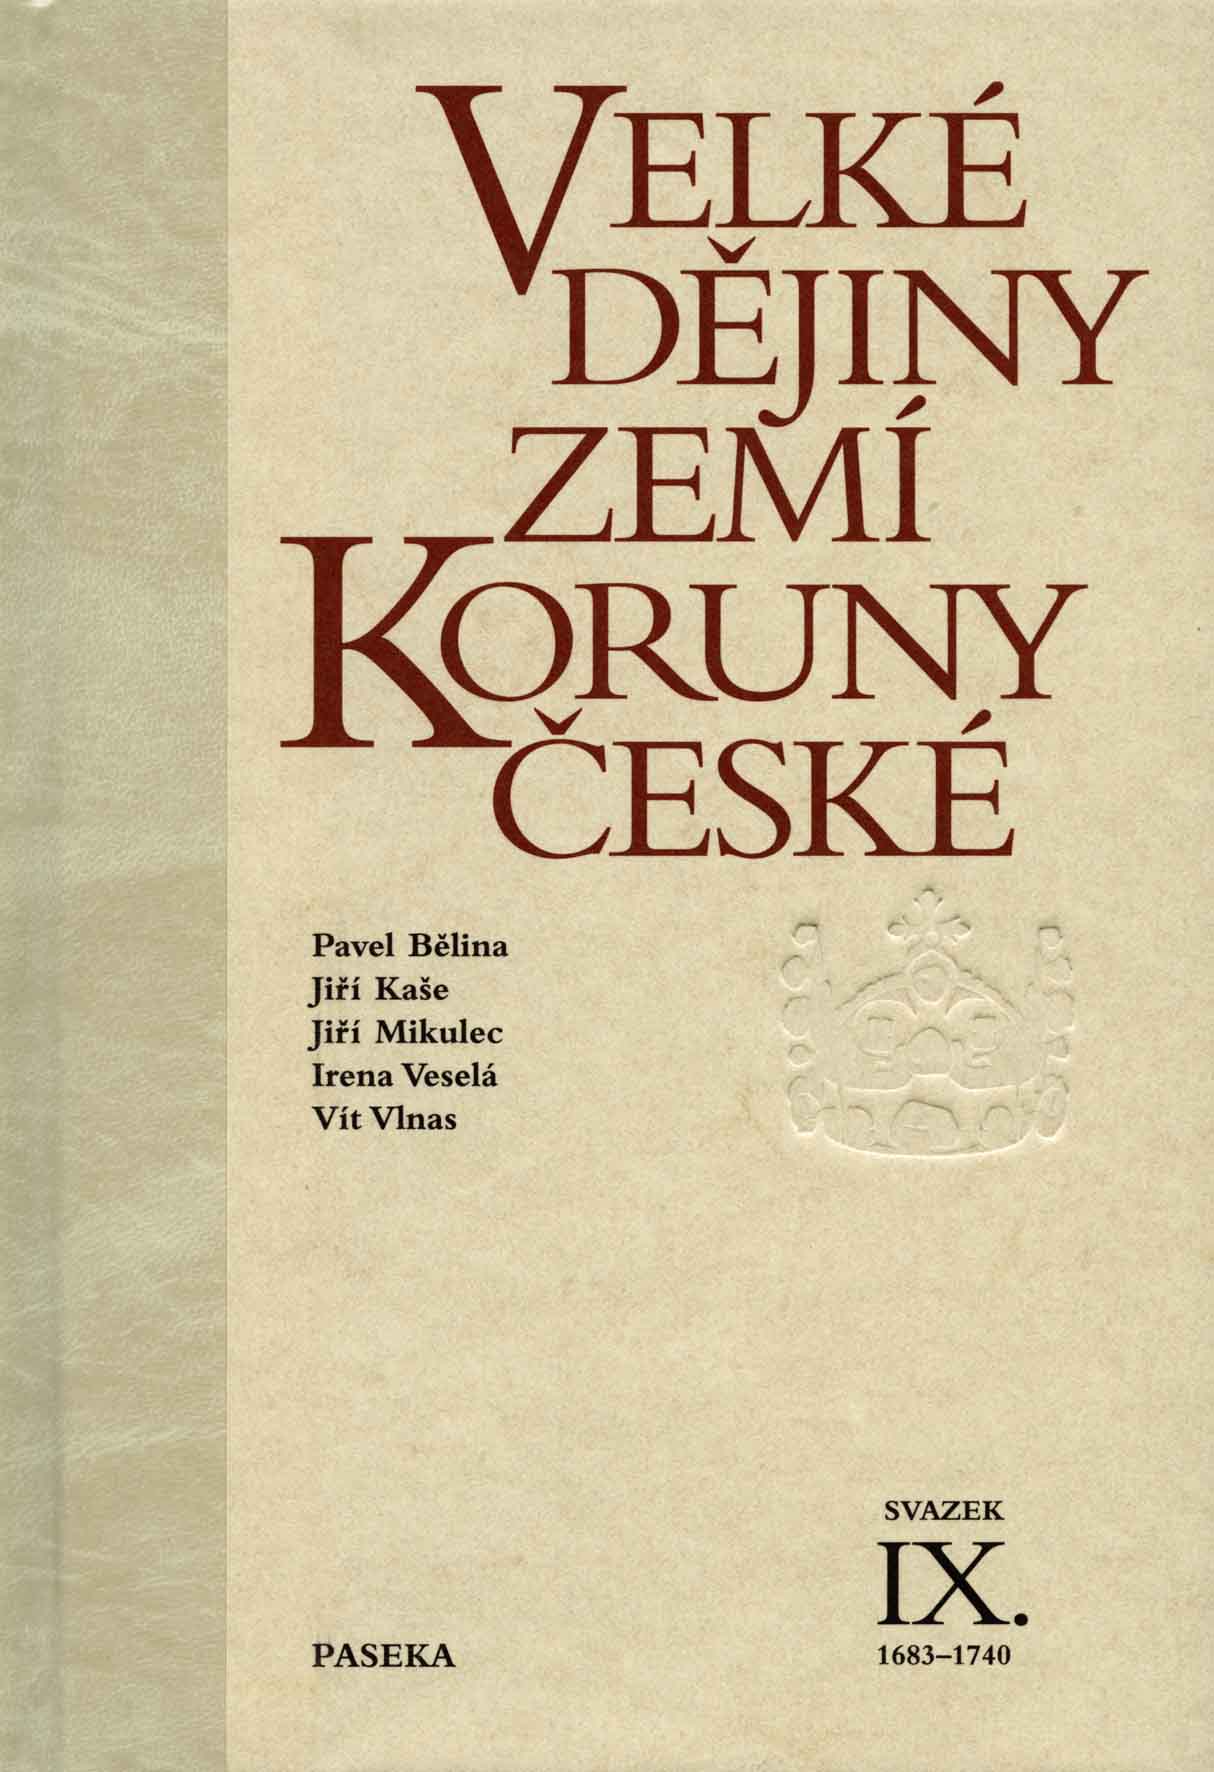 Velké dějiny zemí Koruny české IX. (1683 - 1740)